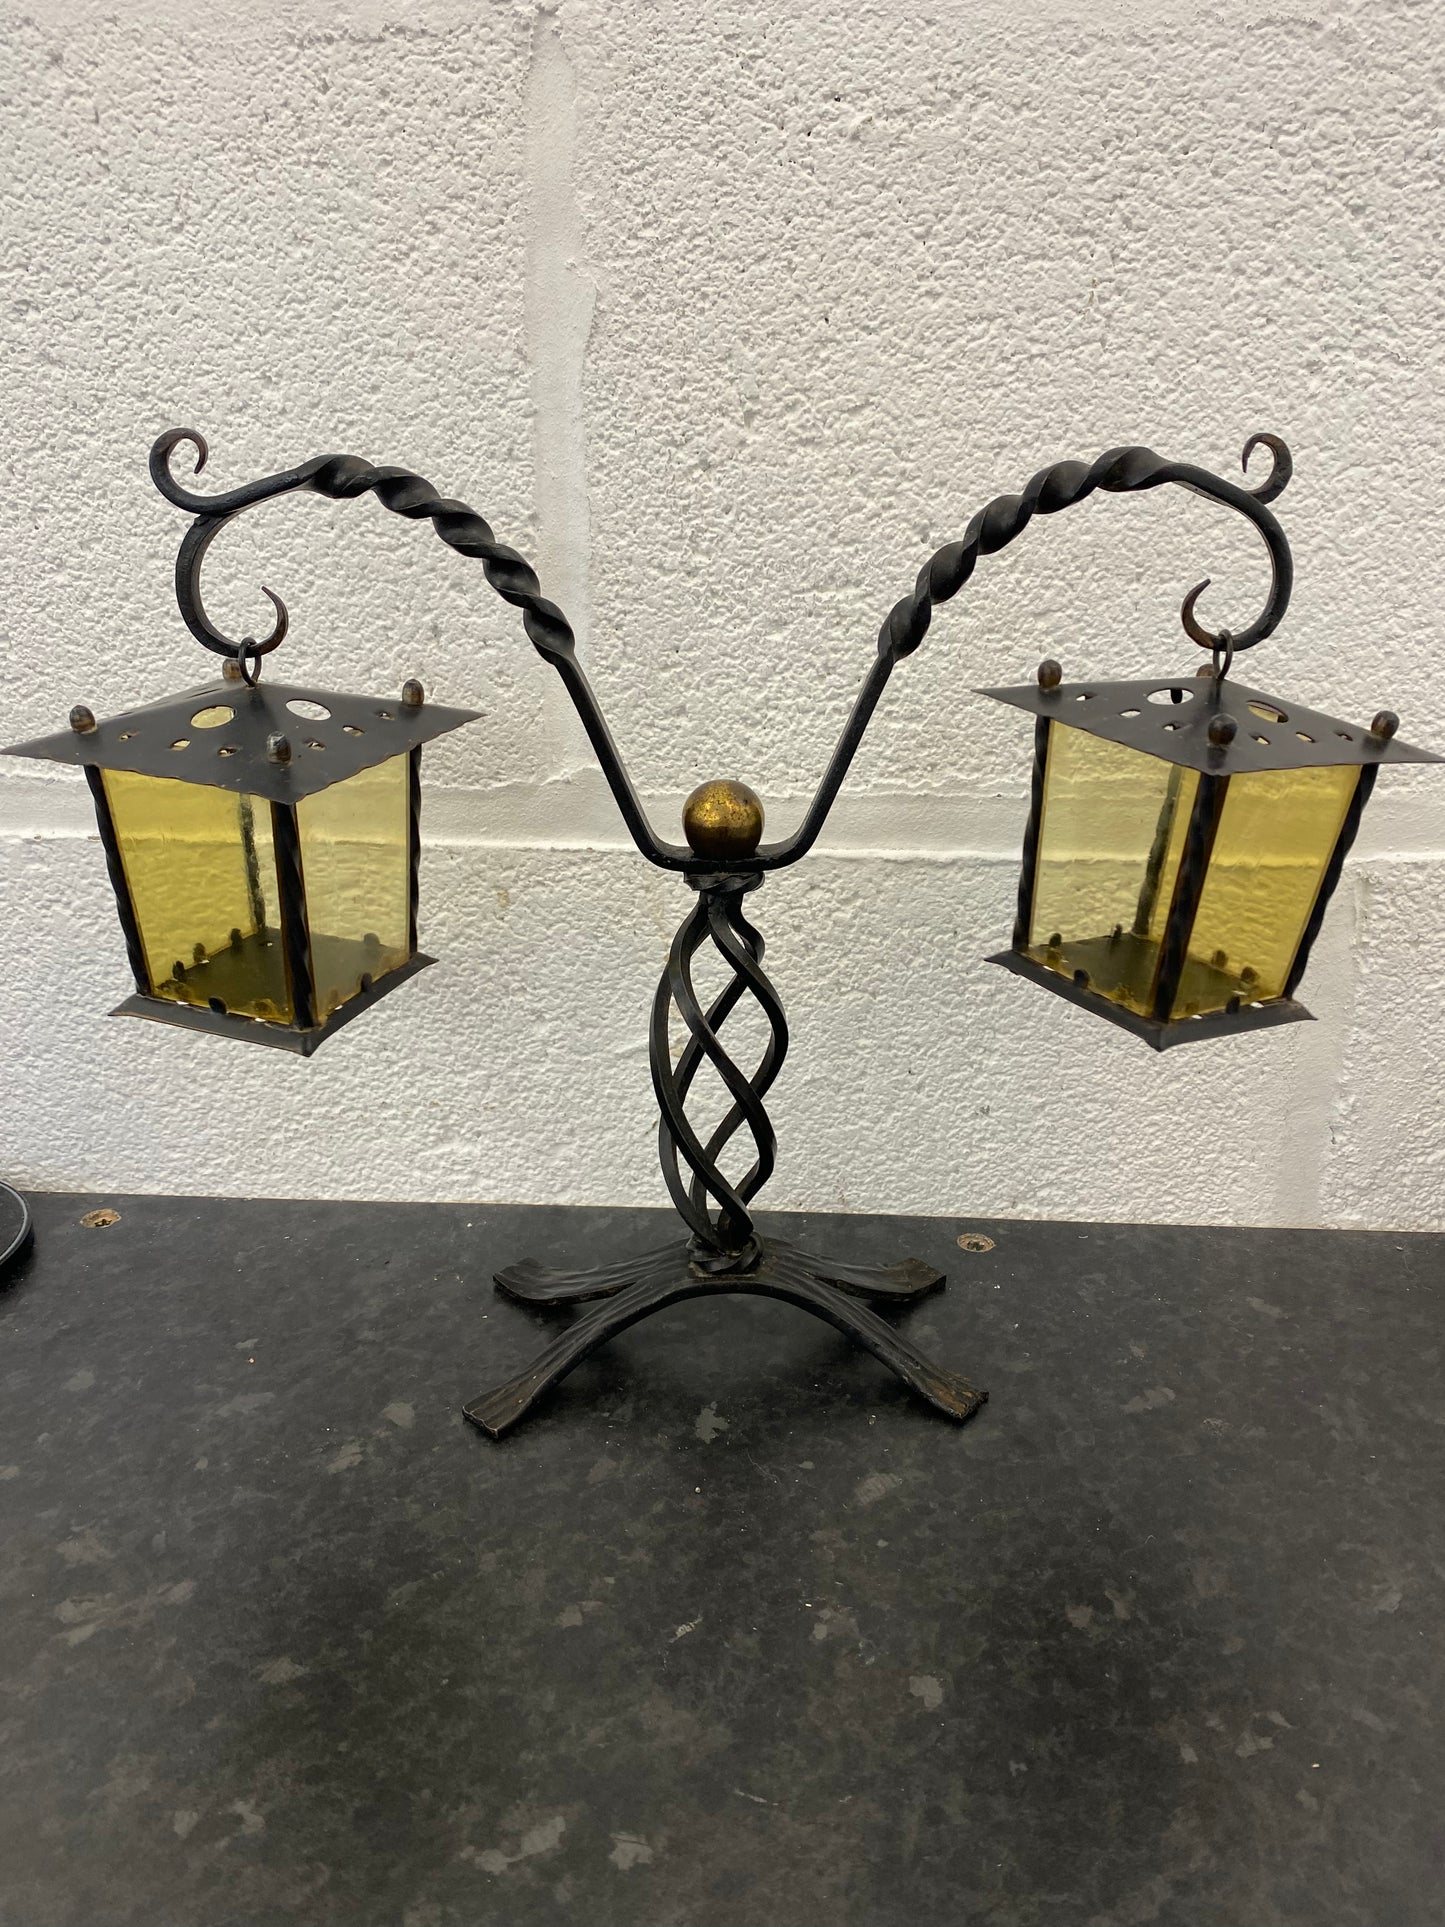 Antique Tealight Lantern - Unknown age